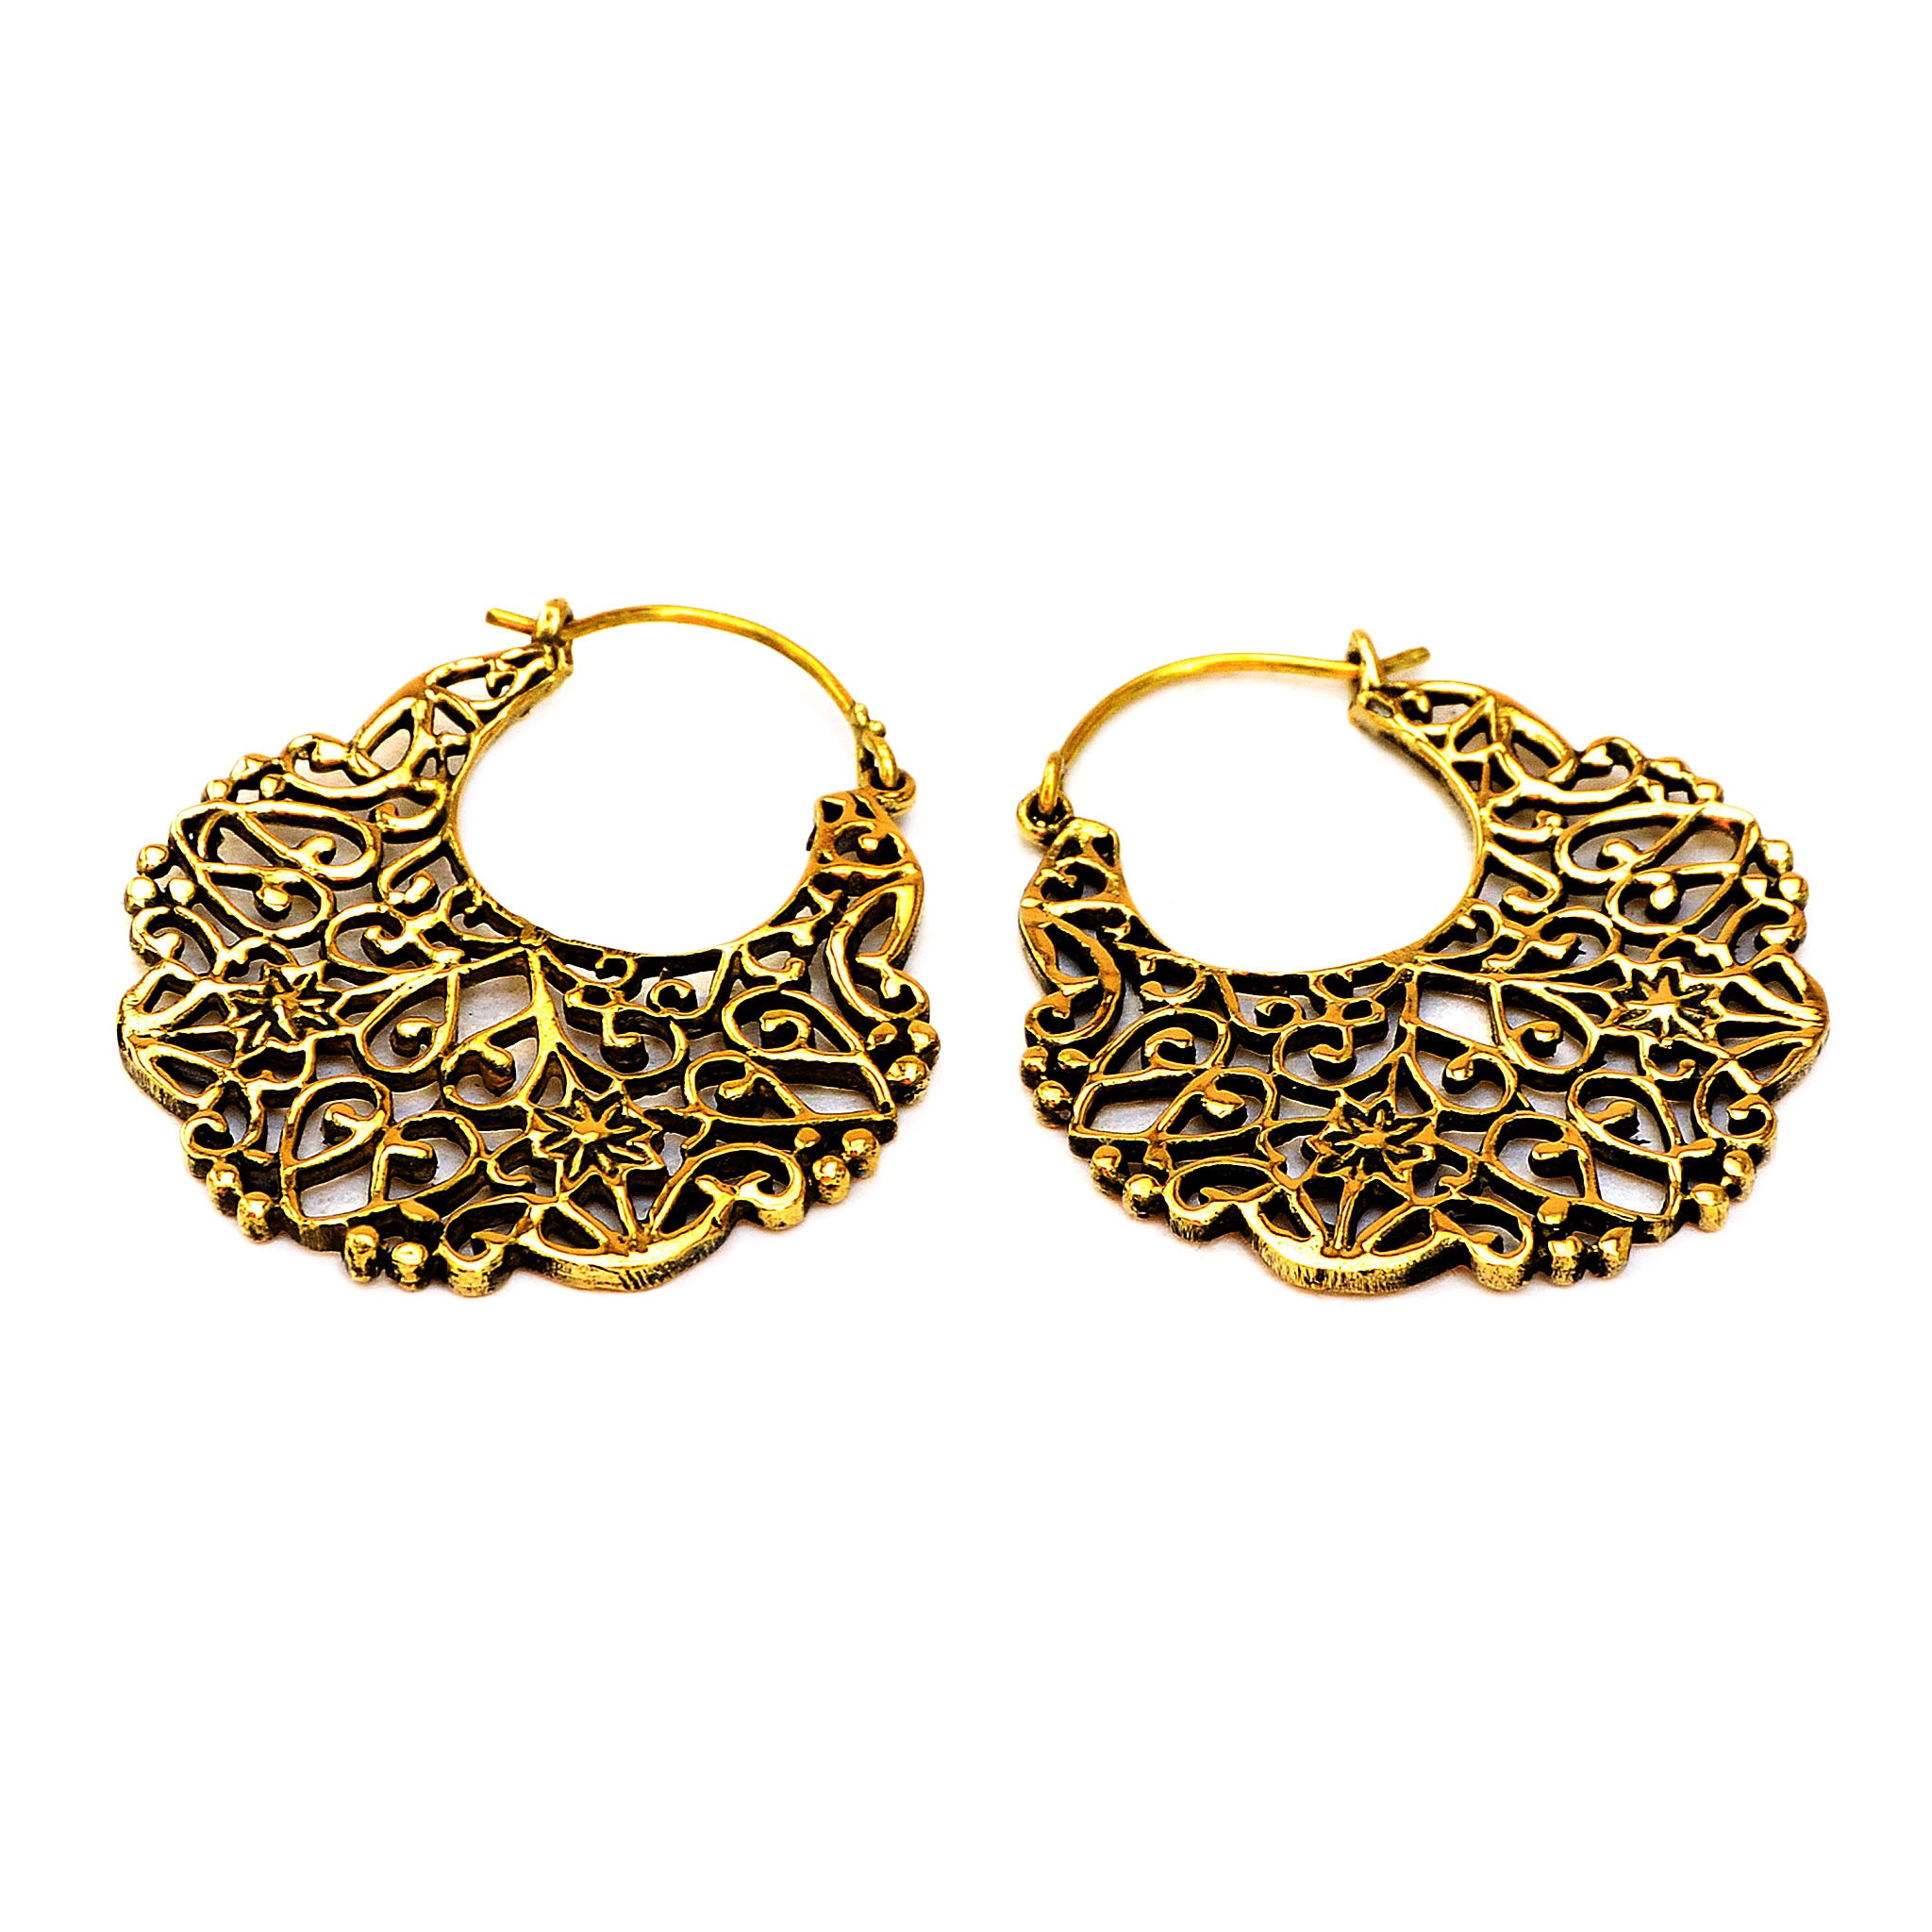 Gypsy boho earrings